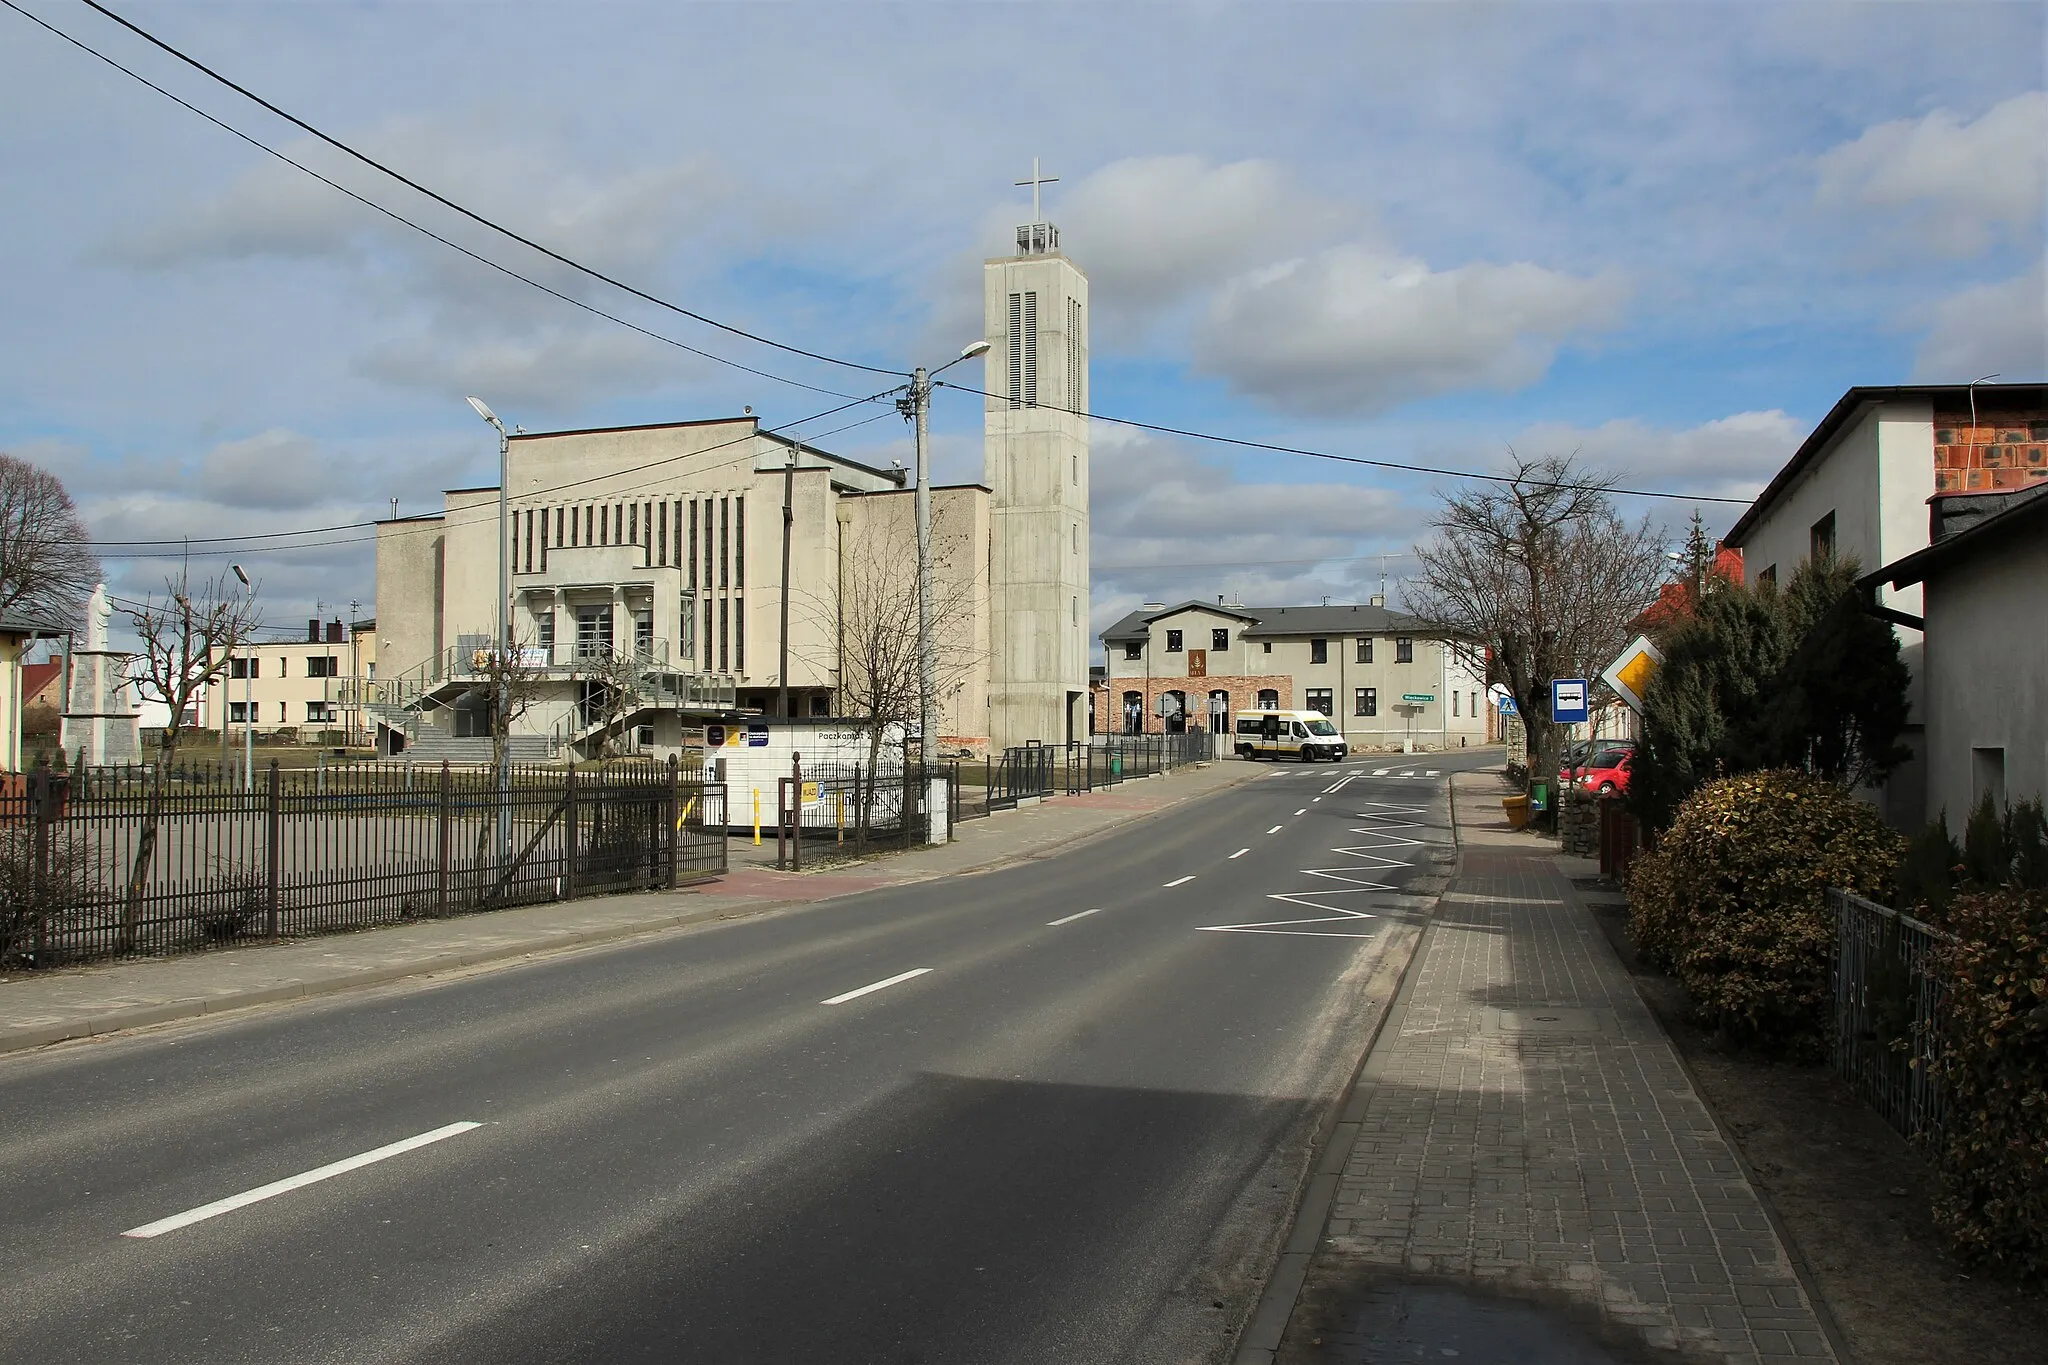 Photo showing: kościół w Dopiewie – widok ogólny i przystanek autobusowy Dopiewo/Kościół